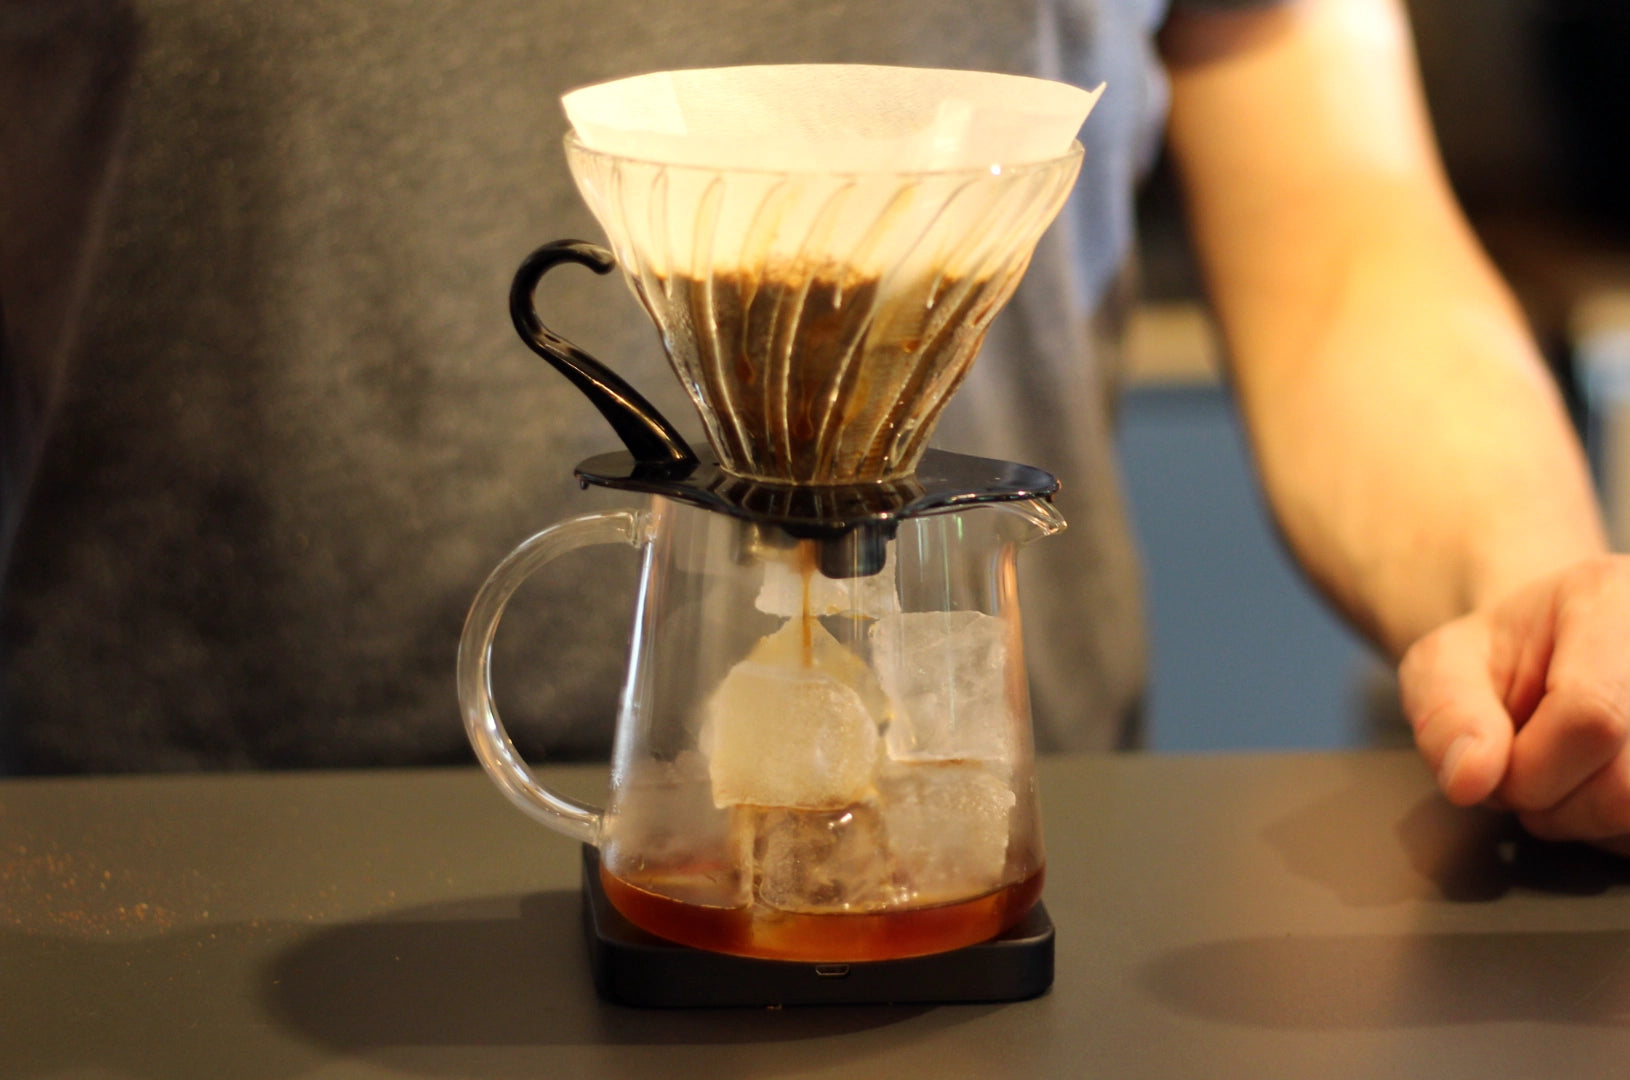 Zubereitungsprozess für Filterkaffee auf Eis. Die Eiswürfel kommen zuerst in die Karaffe, anschließend brühen wir den Filterkaffee wie gewohnt auf.